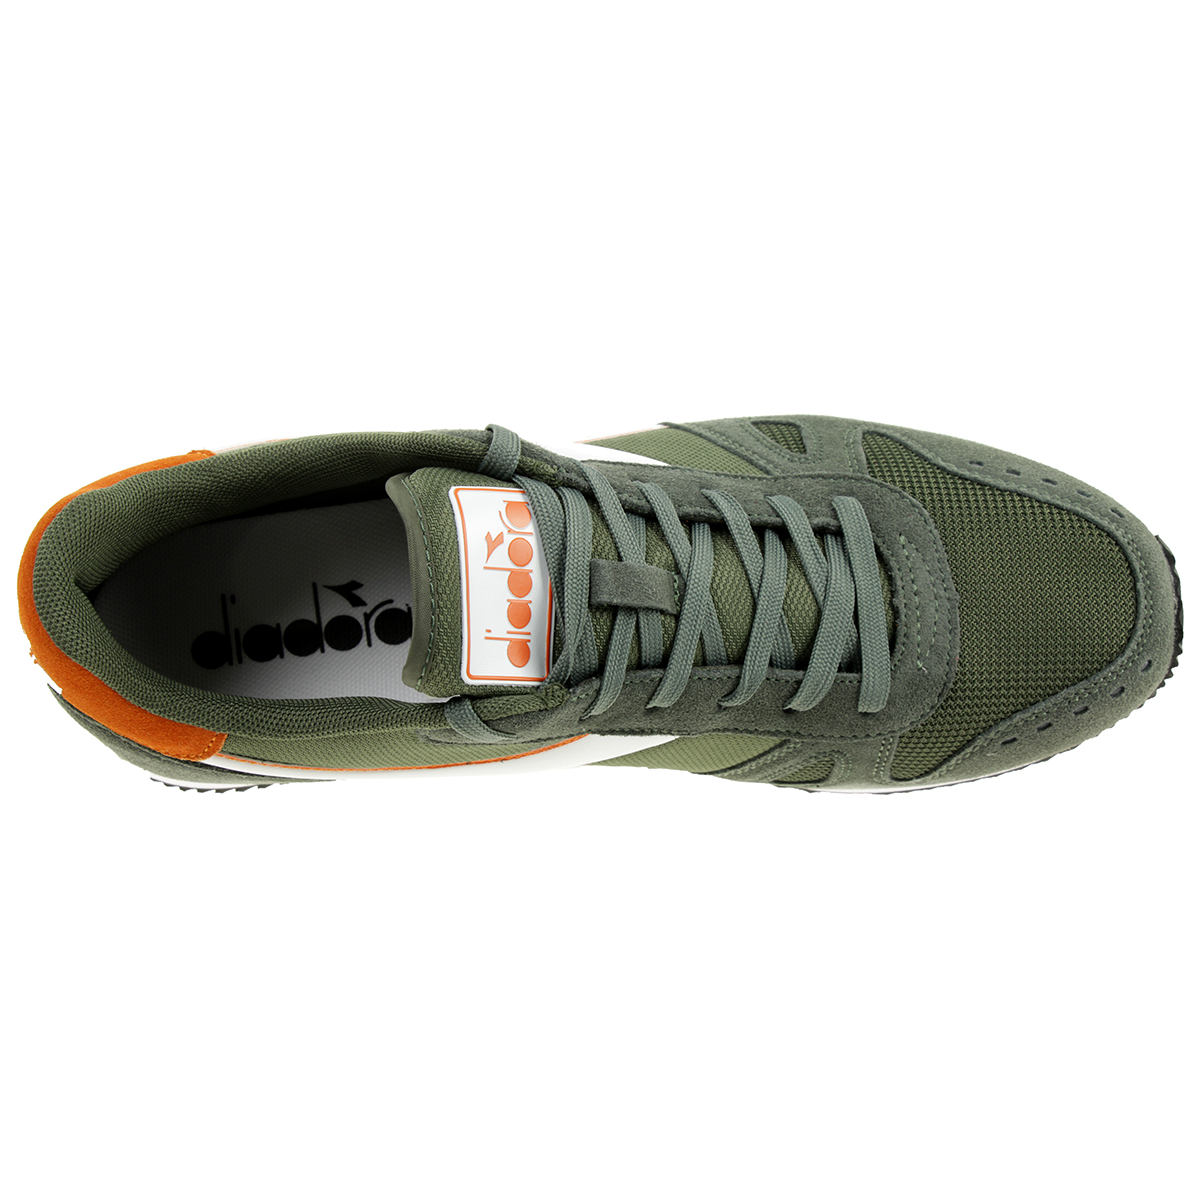 Diadora Simple Run Herren Sneaker Sportschuh Grün/Orange